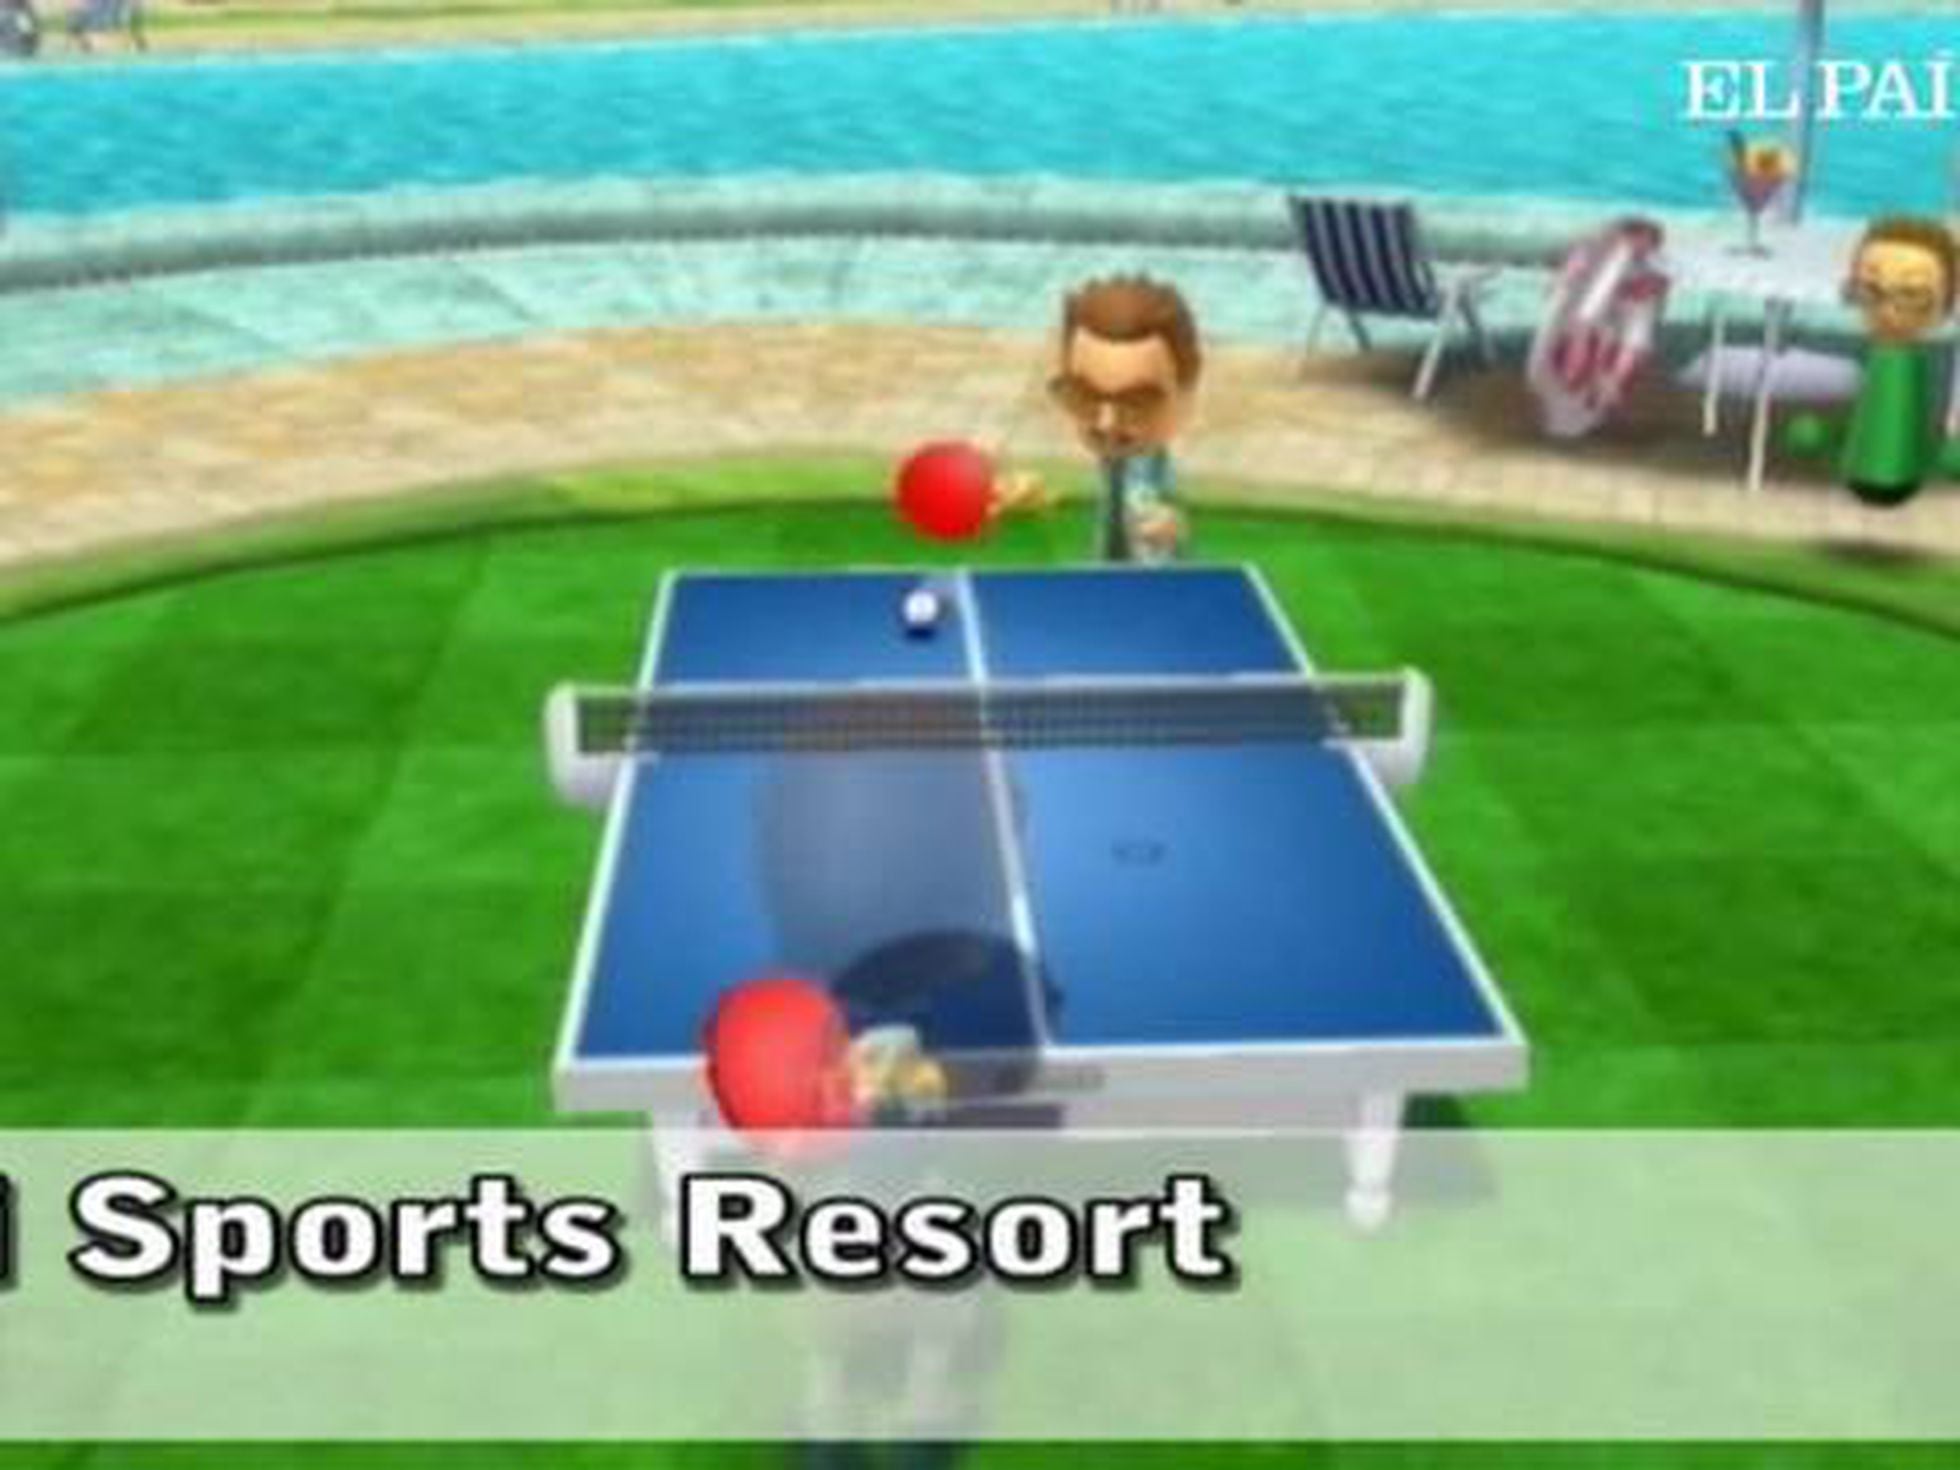 Milímetro Folleto adherirse Análisis de 'Wii Sports Resort' | Tecnología | EL PAÍS